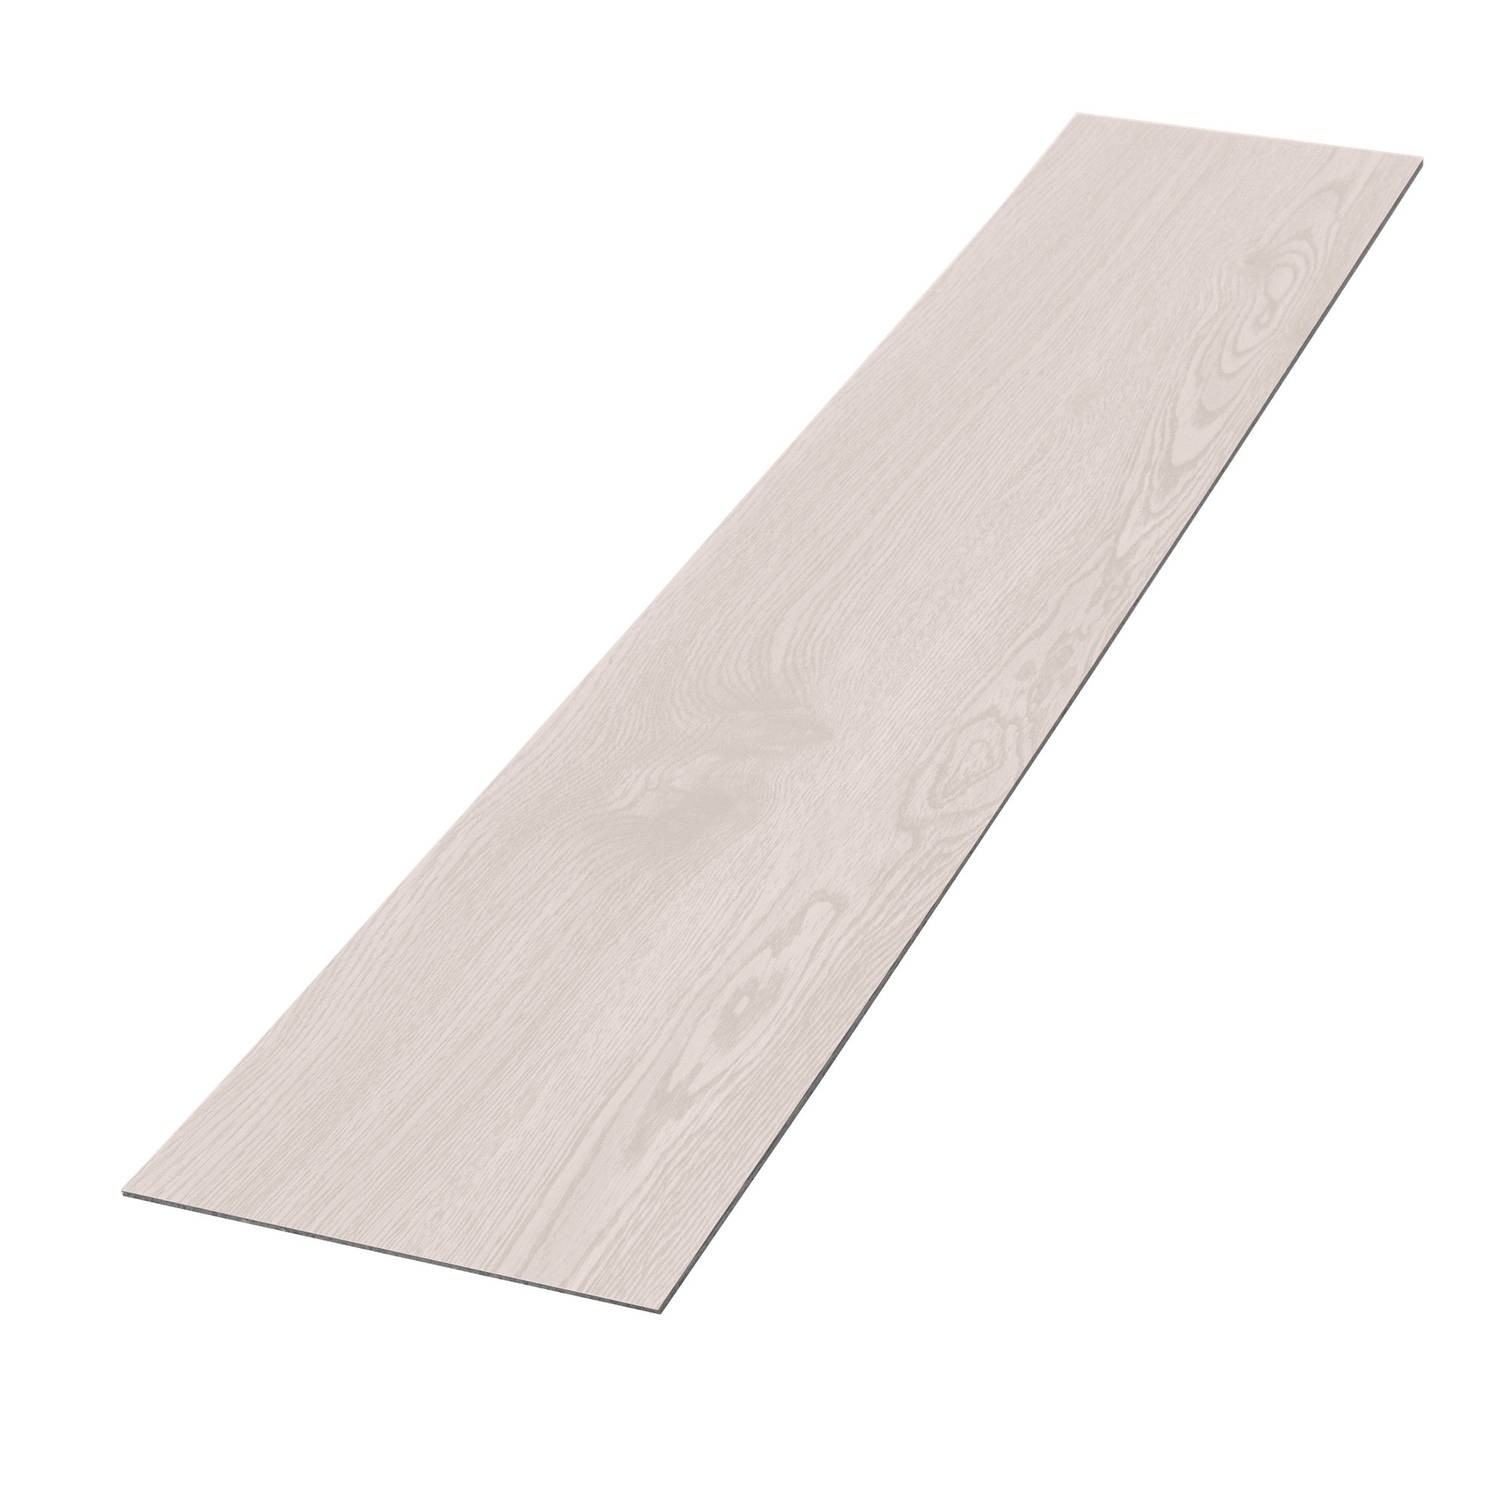 Deluxe PVC klevende vinylvloer voor 2,3 m² witte eik 2 mm dik ML-Design